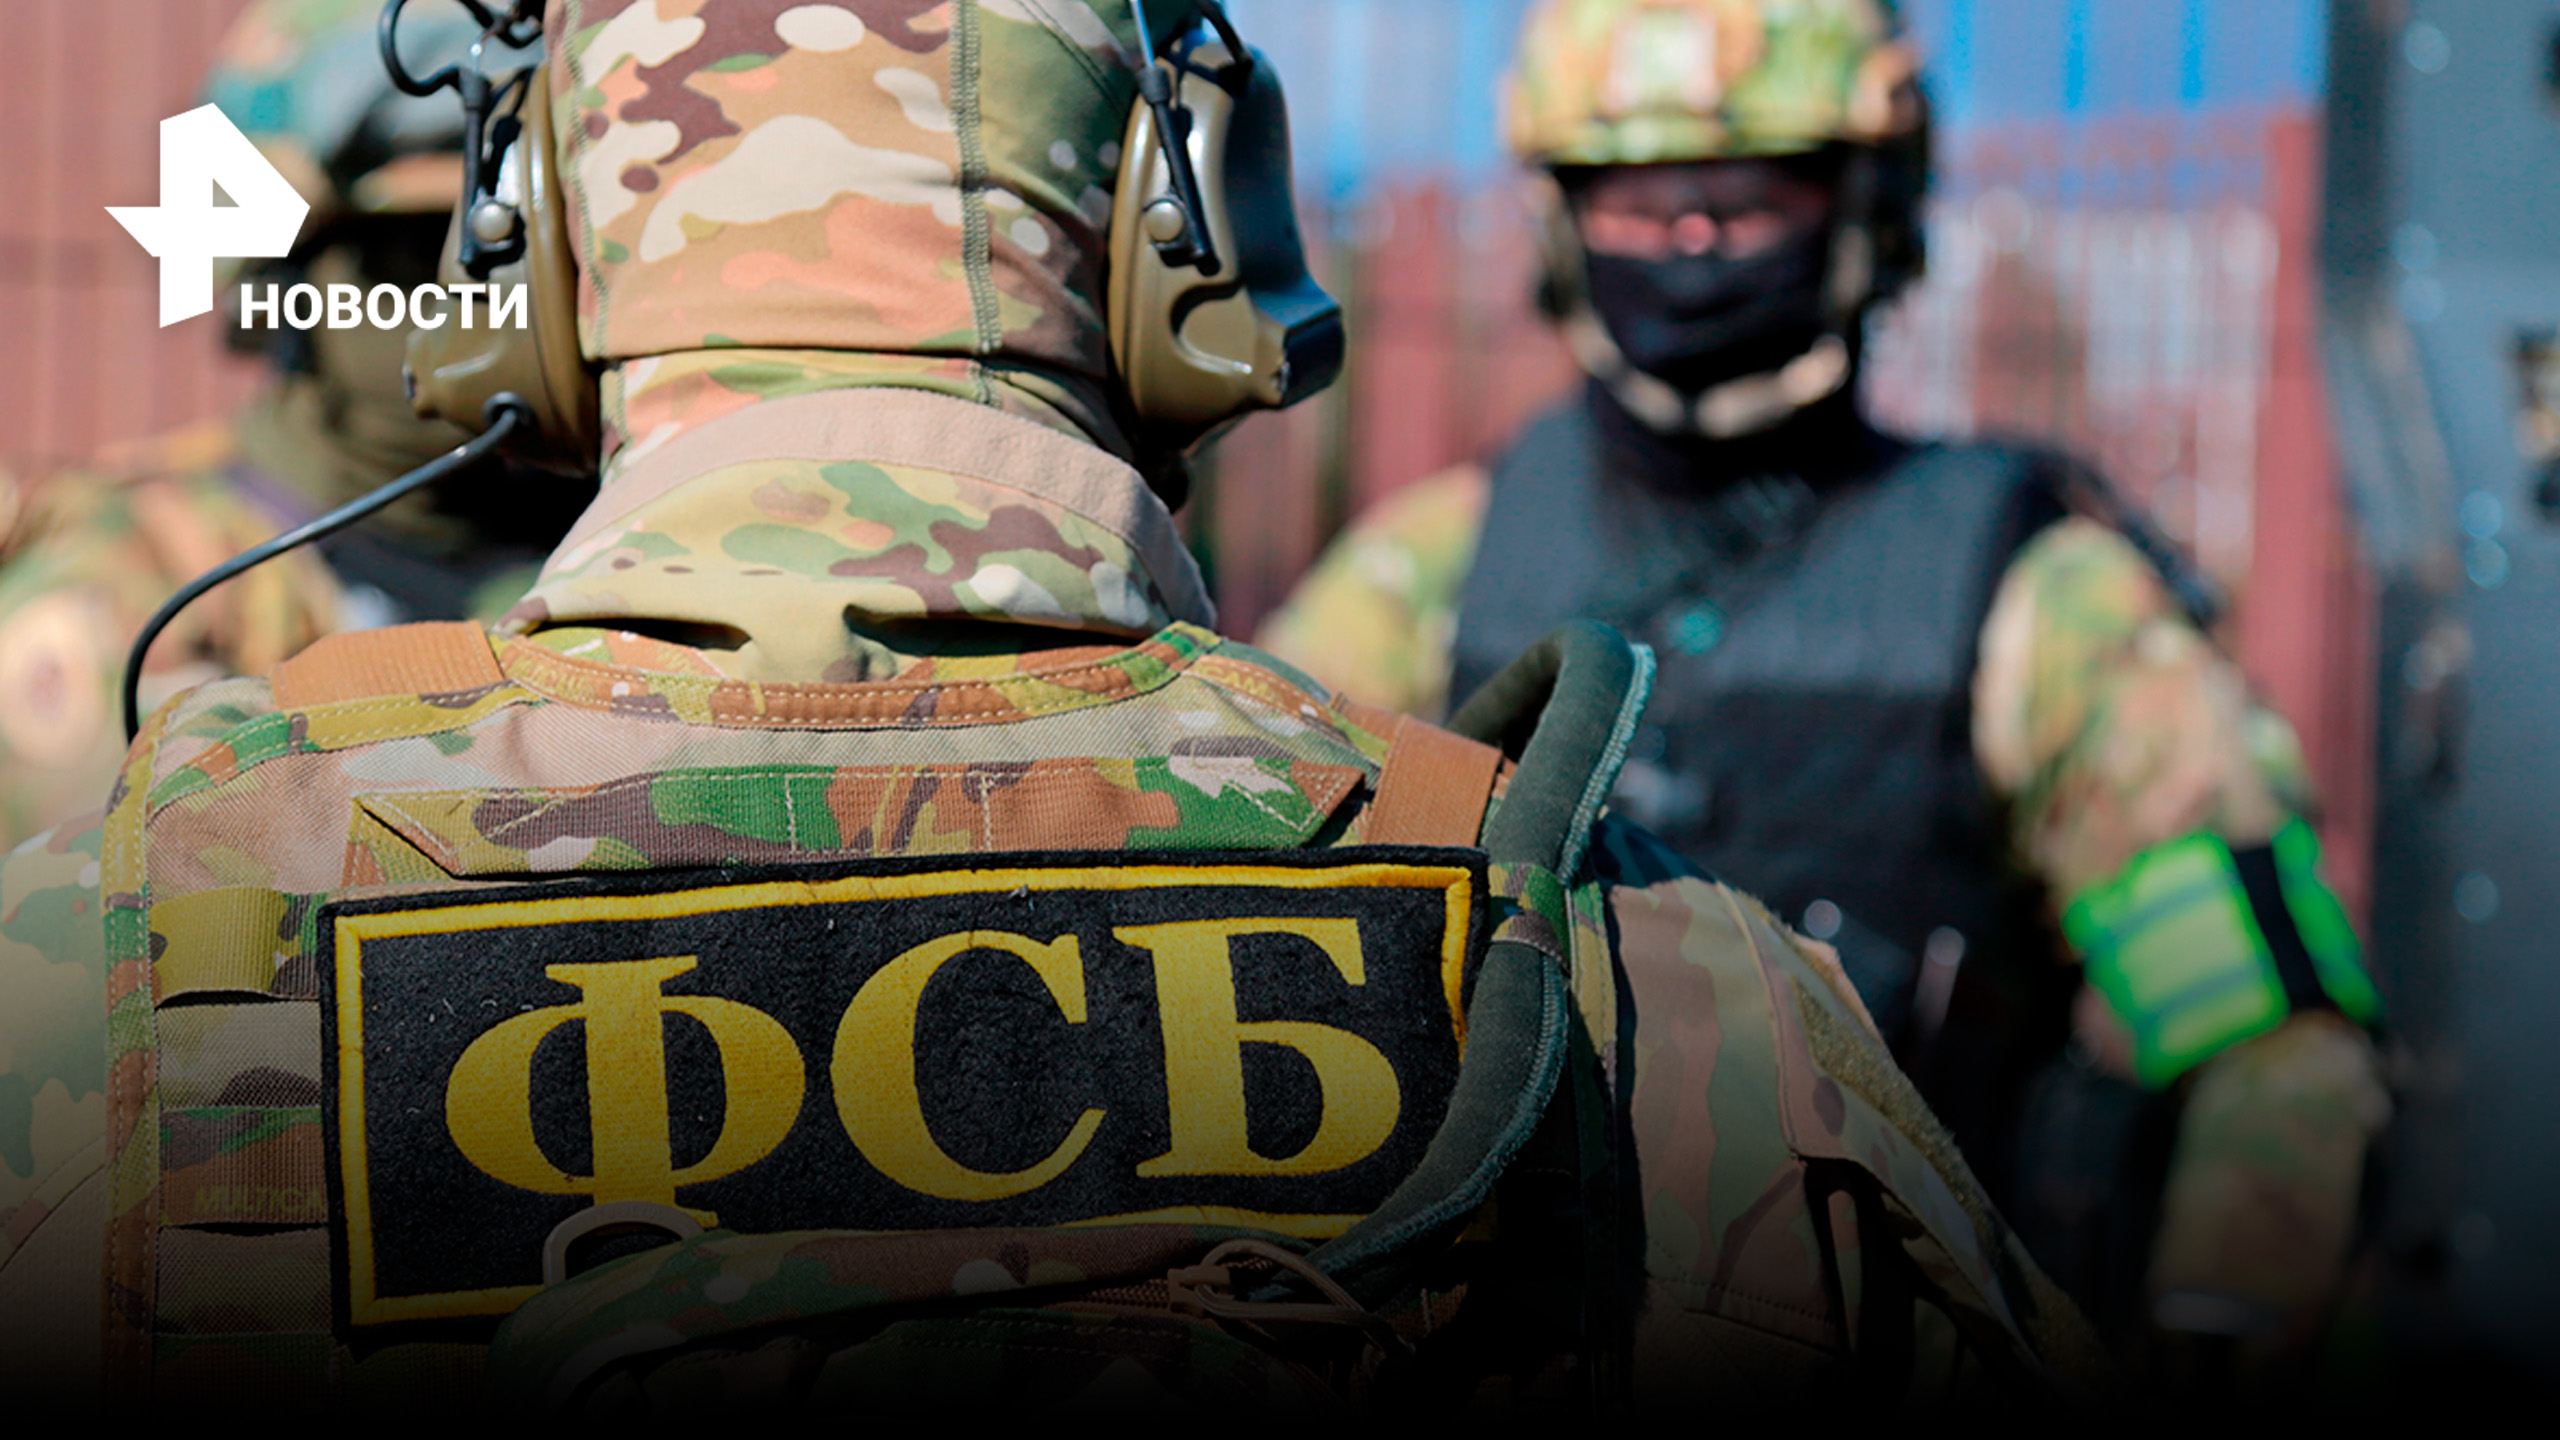 ФСБ задержала граждан Украины: в Запорожье готовили серию терактов в людных местах / РЕН Новости